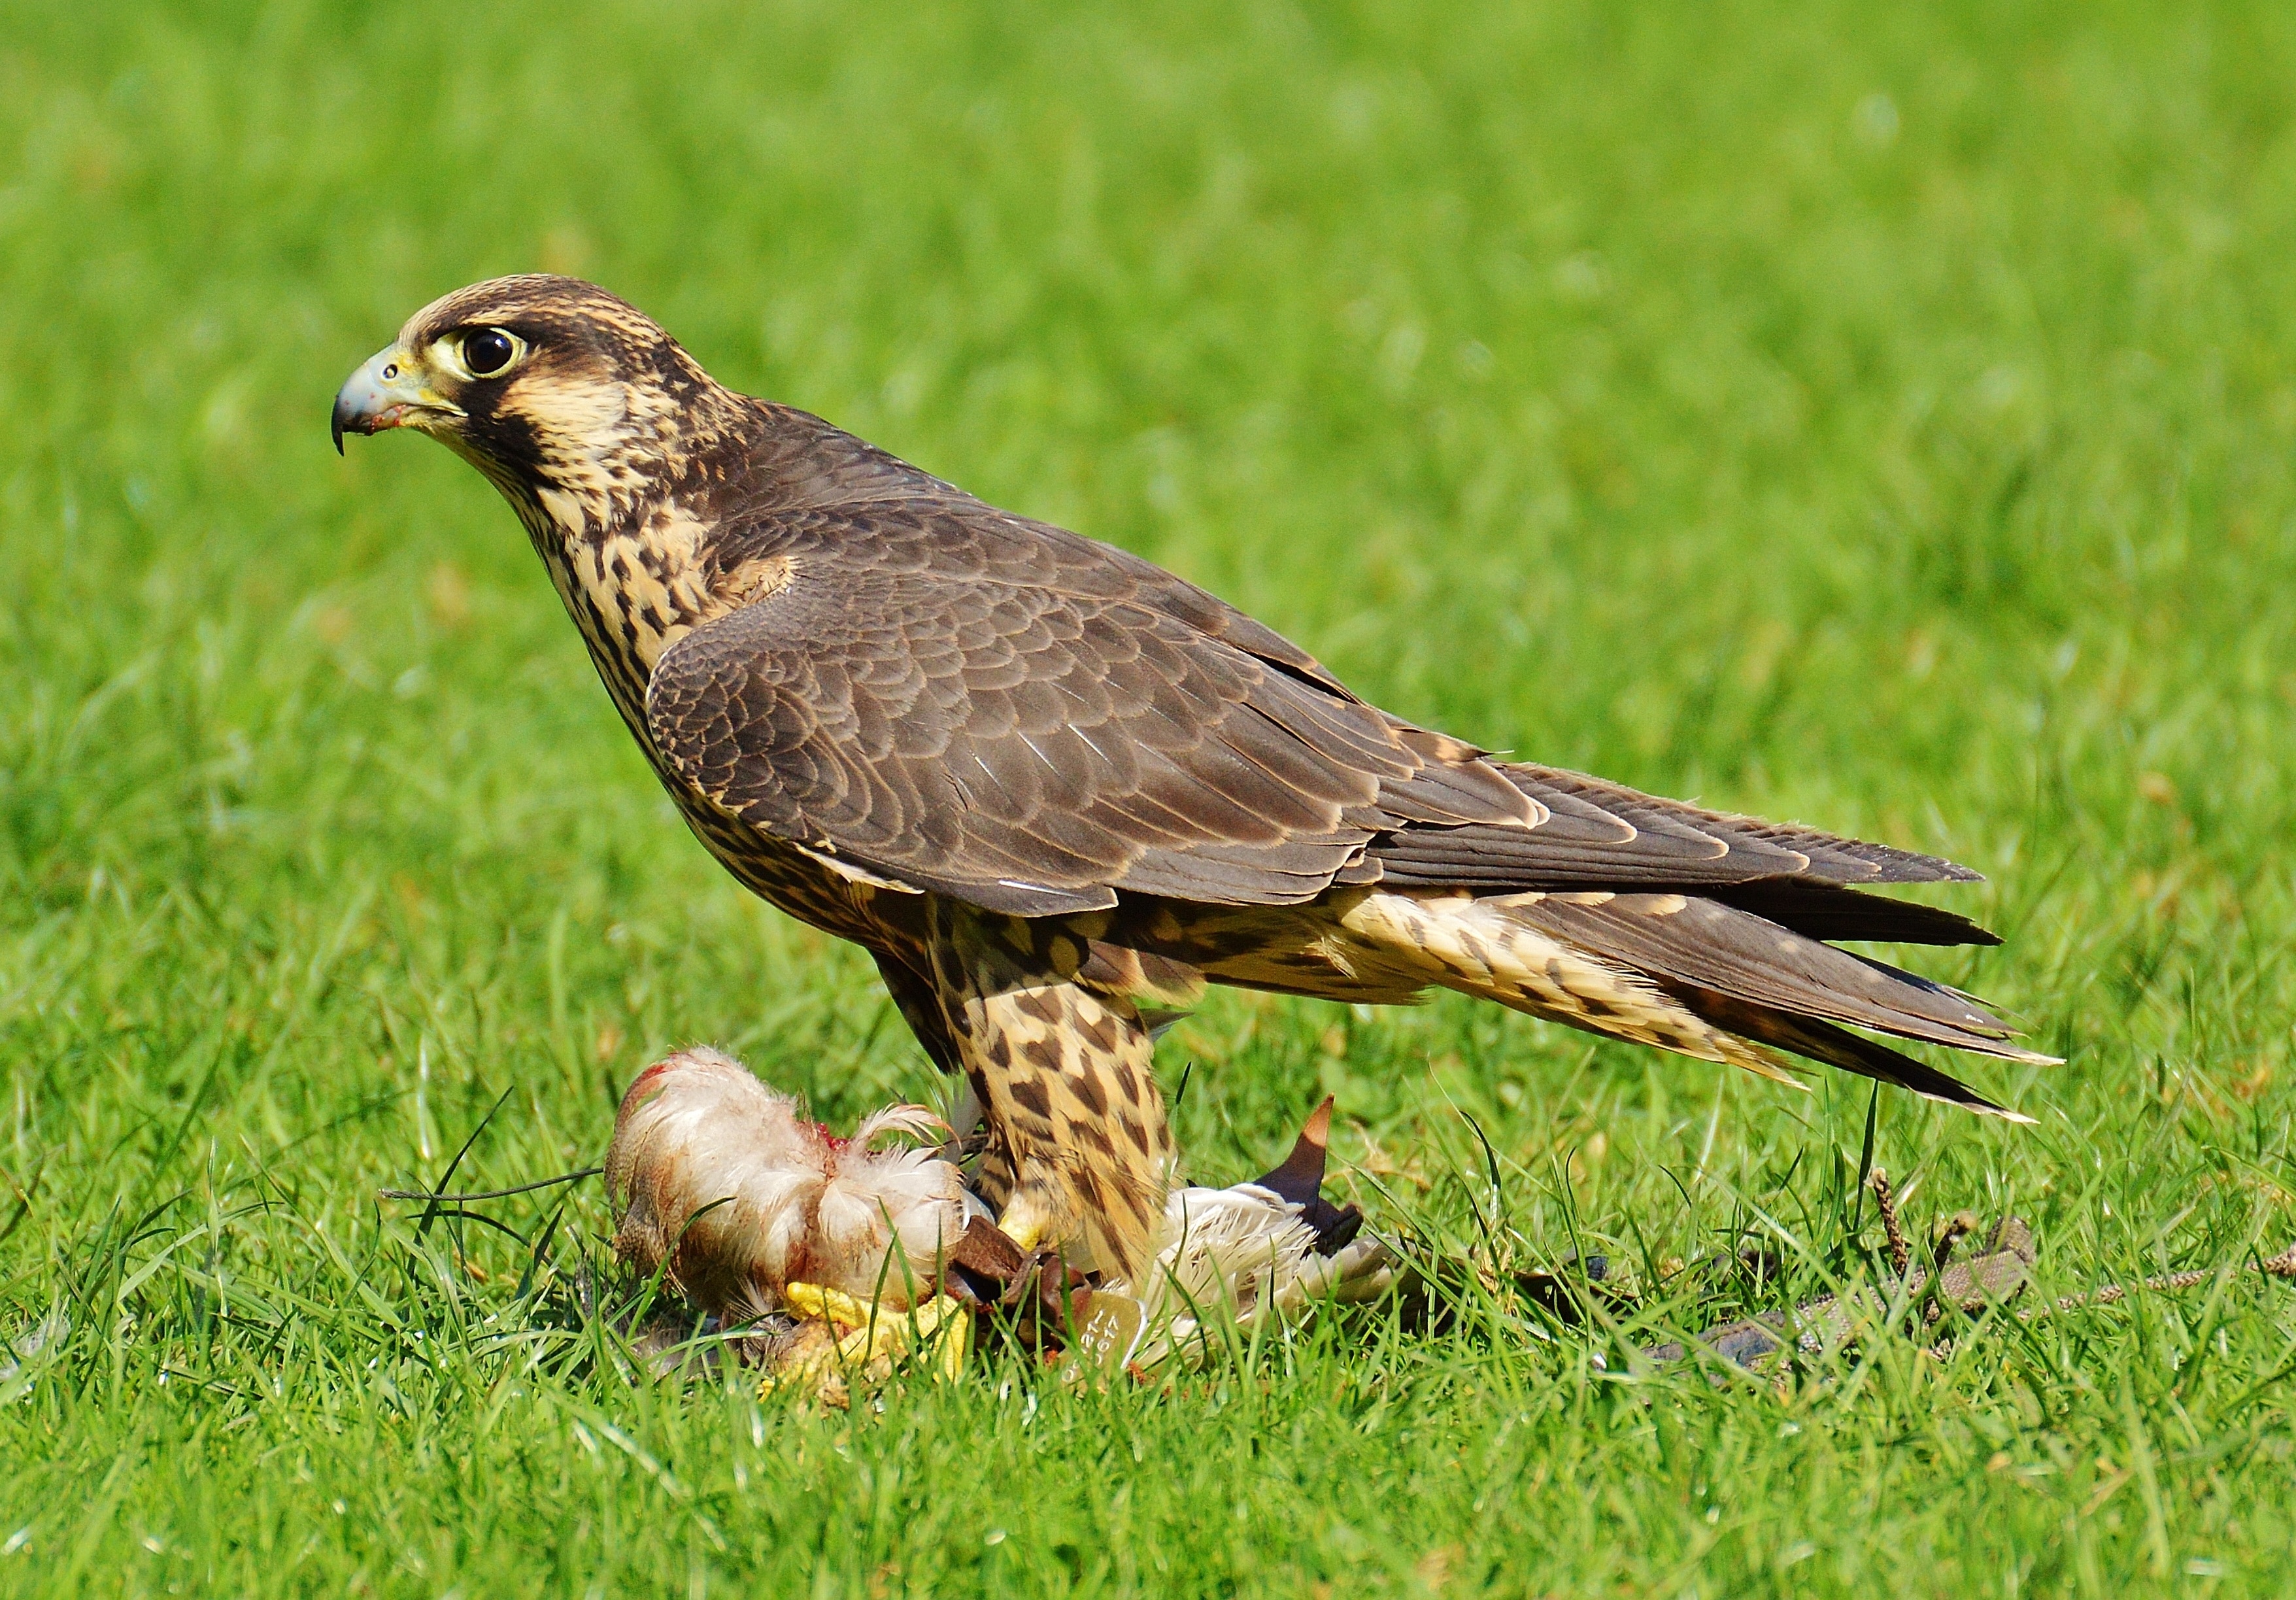 Falcon, Prey, Wildpark Poing, Access, grass, bird